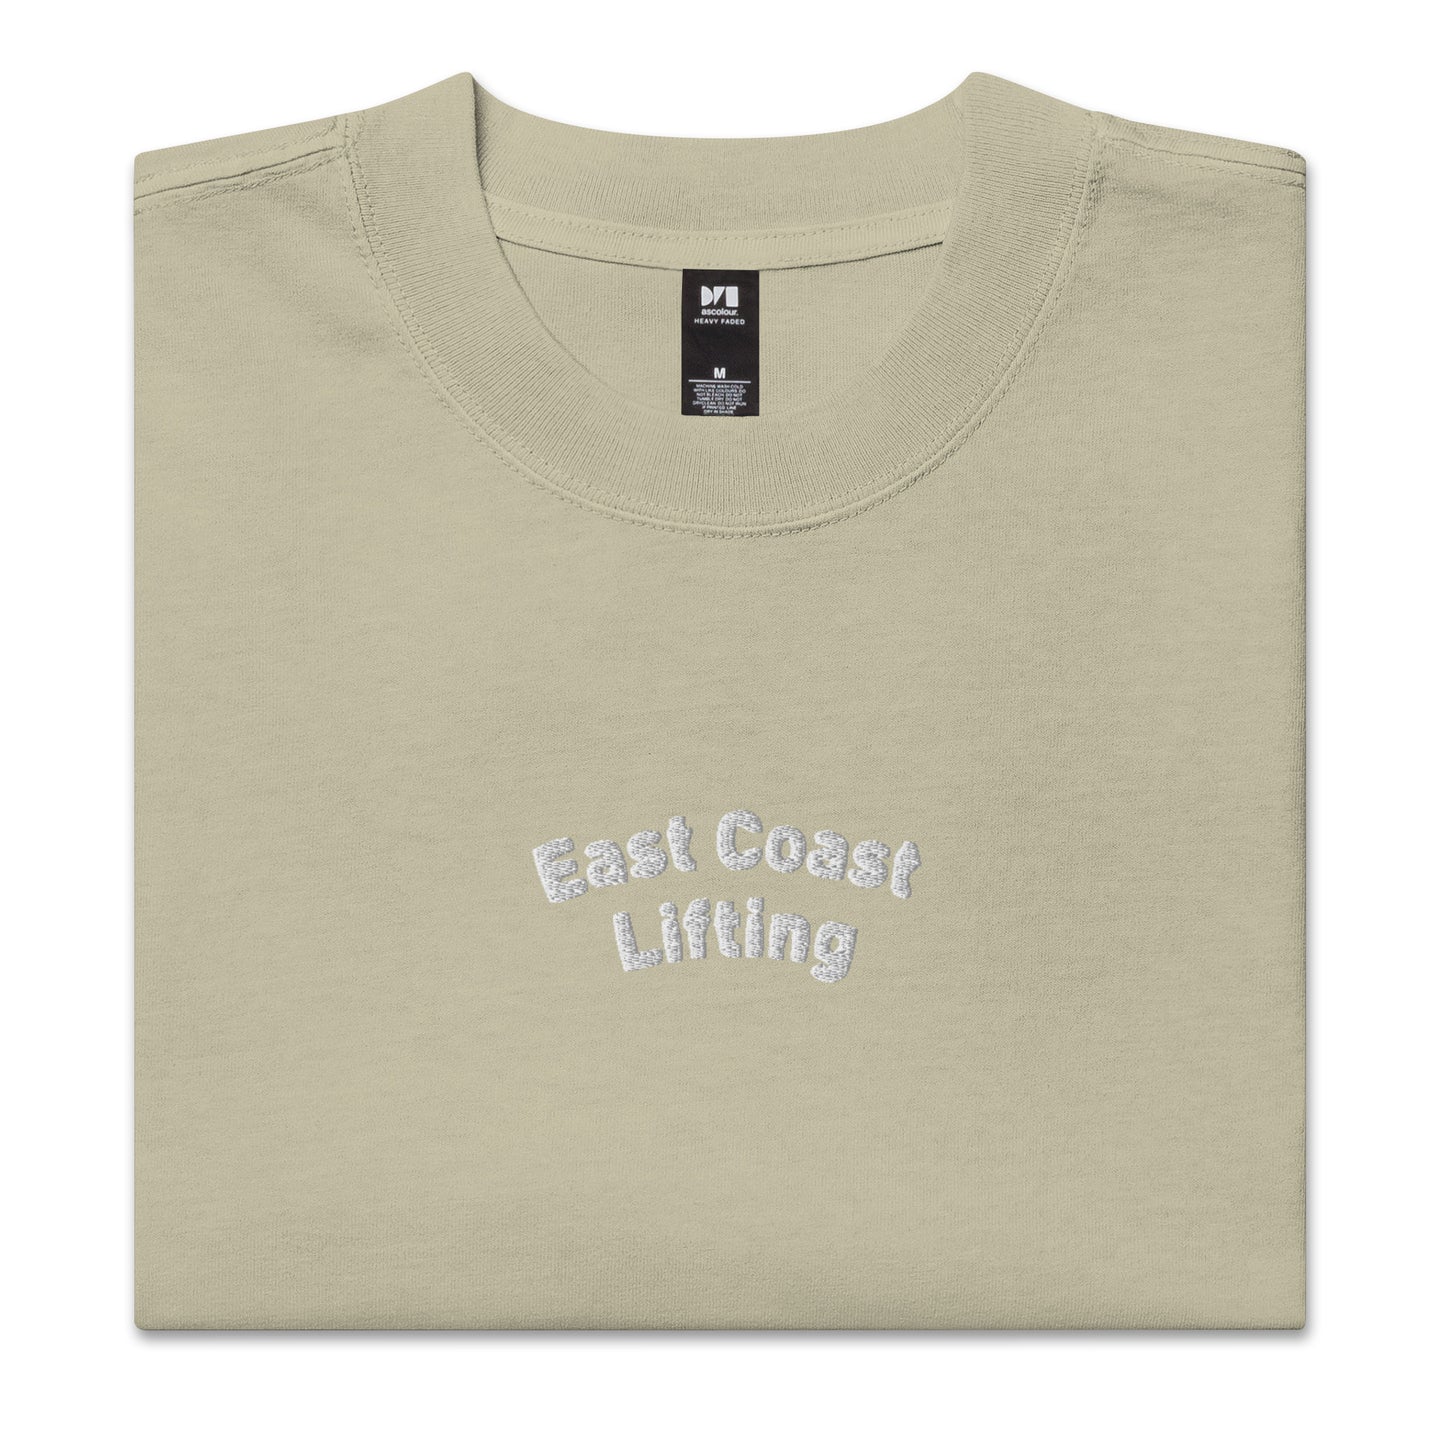 Oversized East Coast lifting  t-shirt